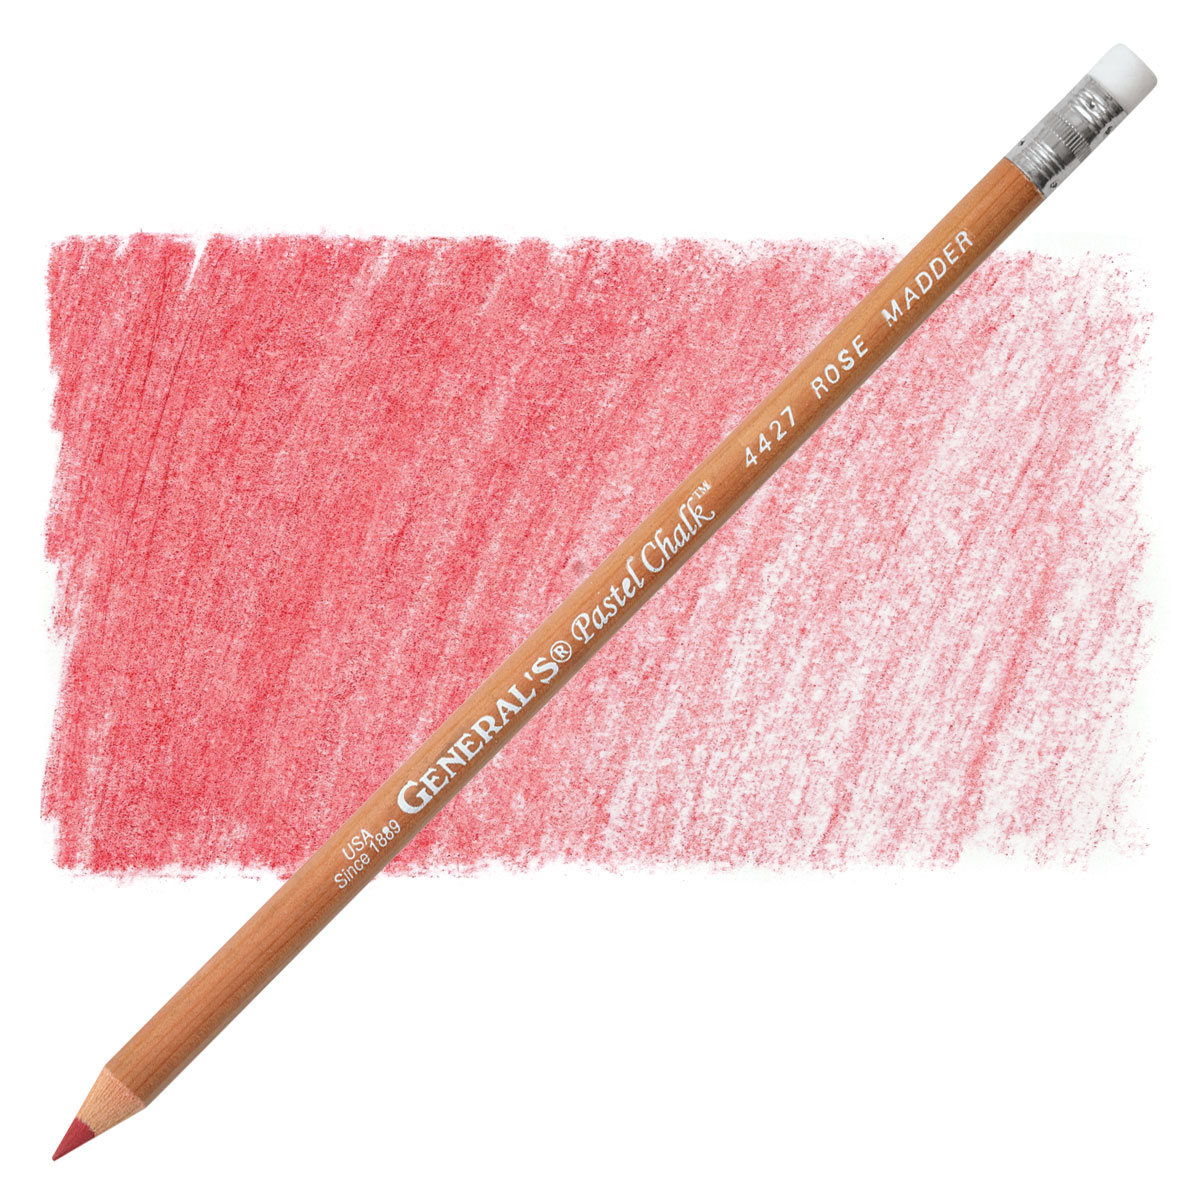 General's MultiPastel Chalk Pencil, Rose Madder